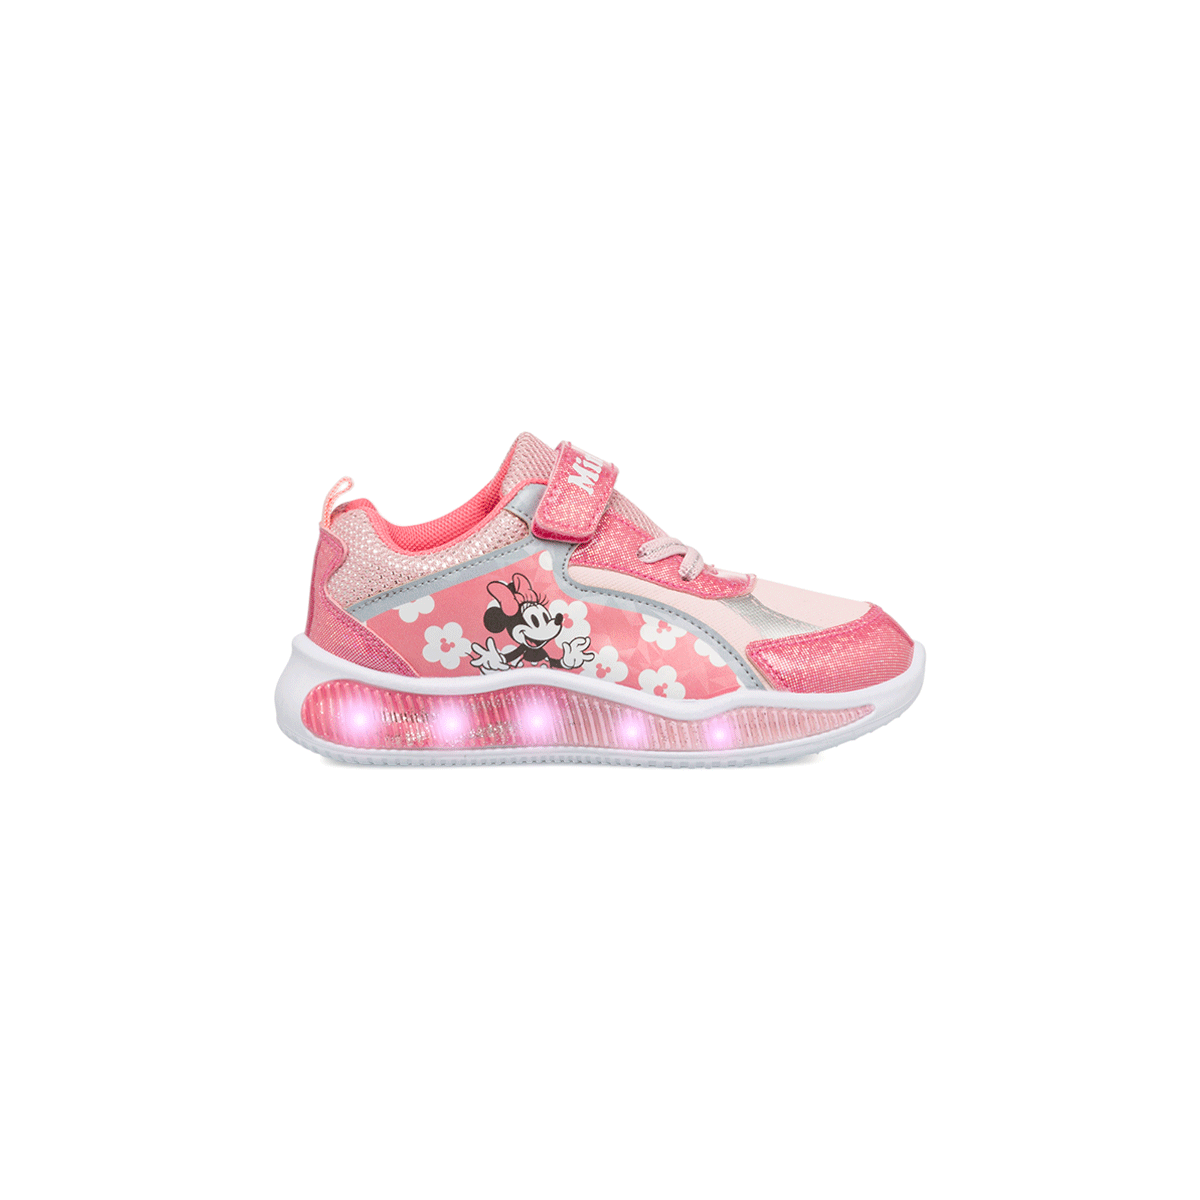 Sneakers primi passi rosa da bambina con luci e stampa Minnie, Scarpe Primi passi, SKU s332000091, Immagine 0